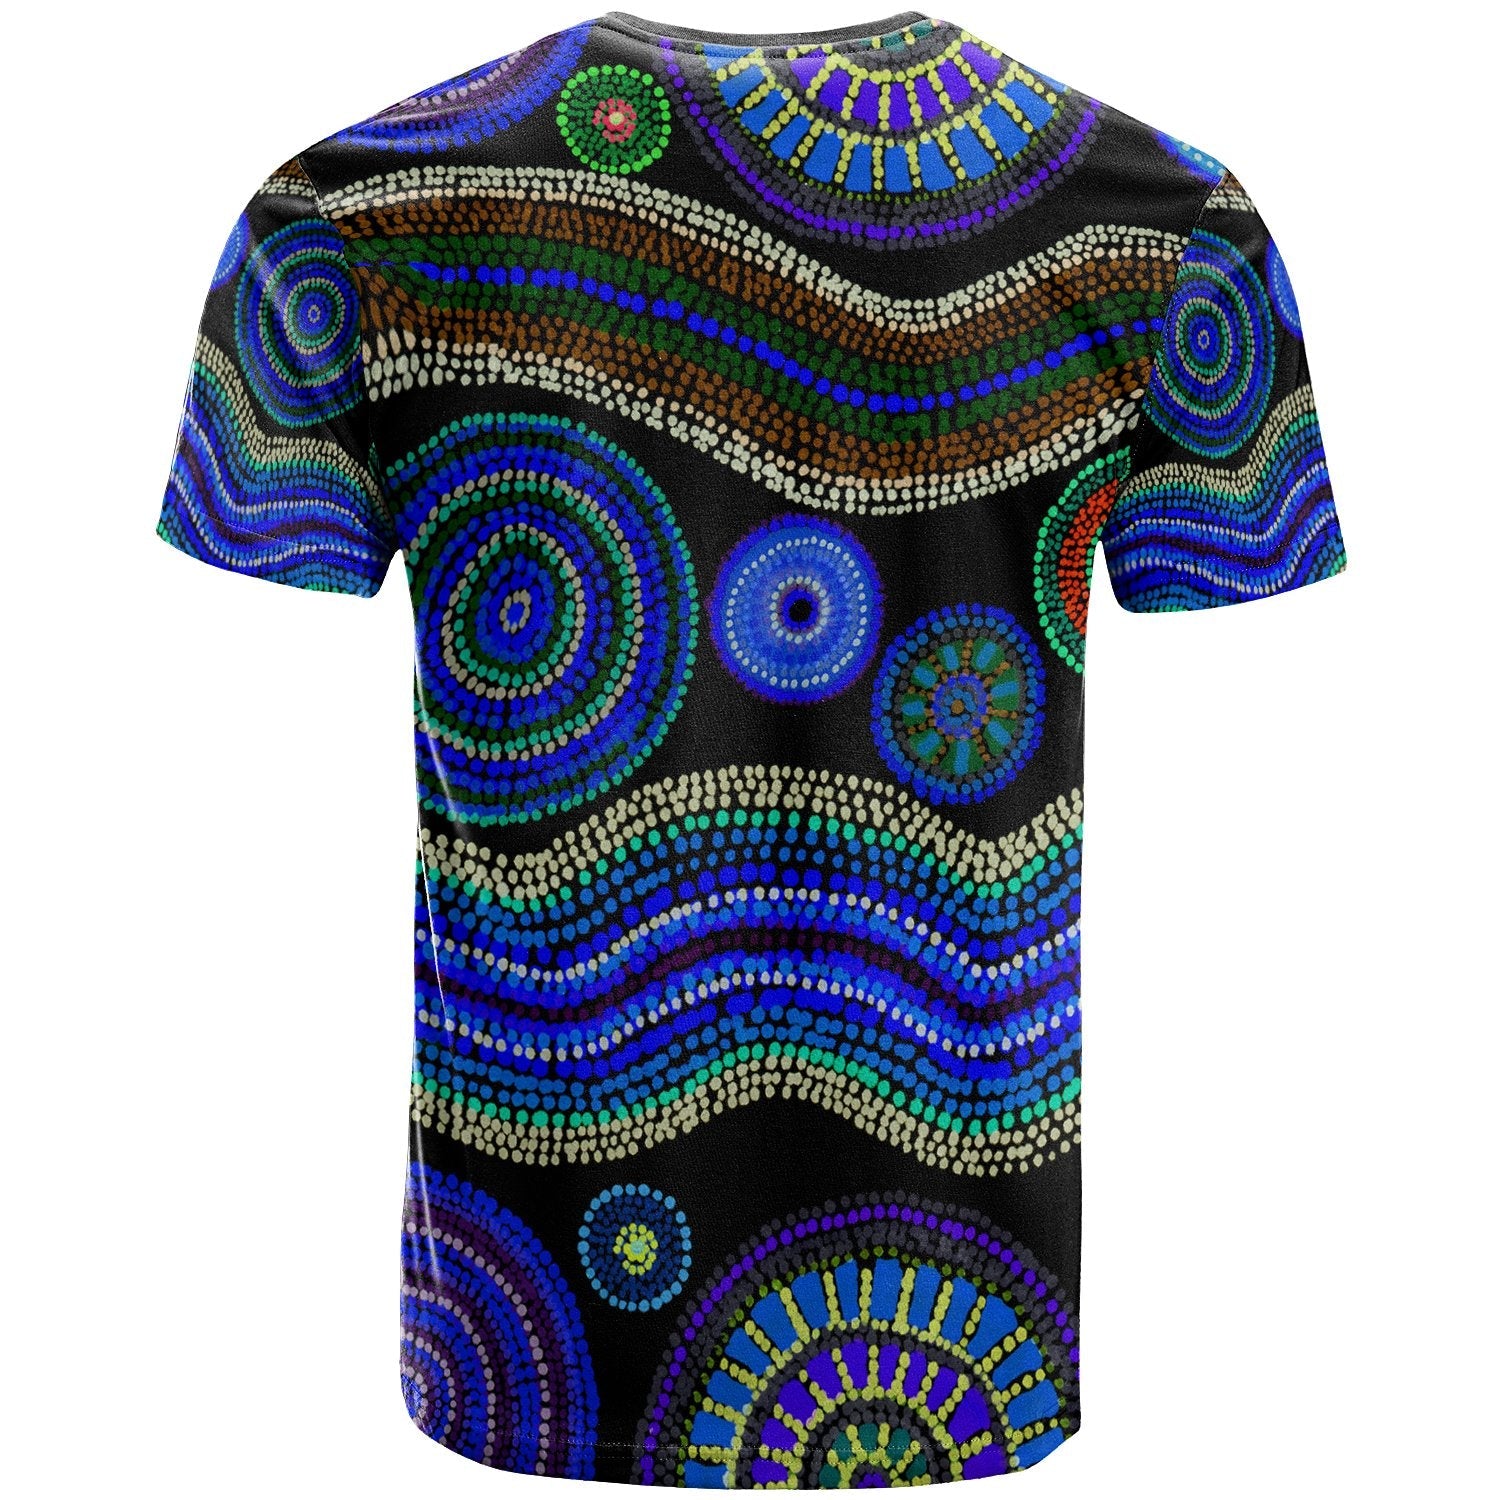 tshirt-aboriginal-dot-unique-style-blue